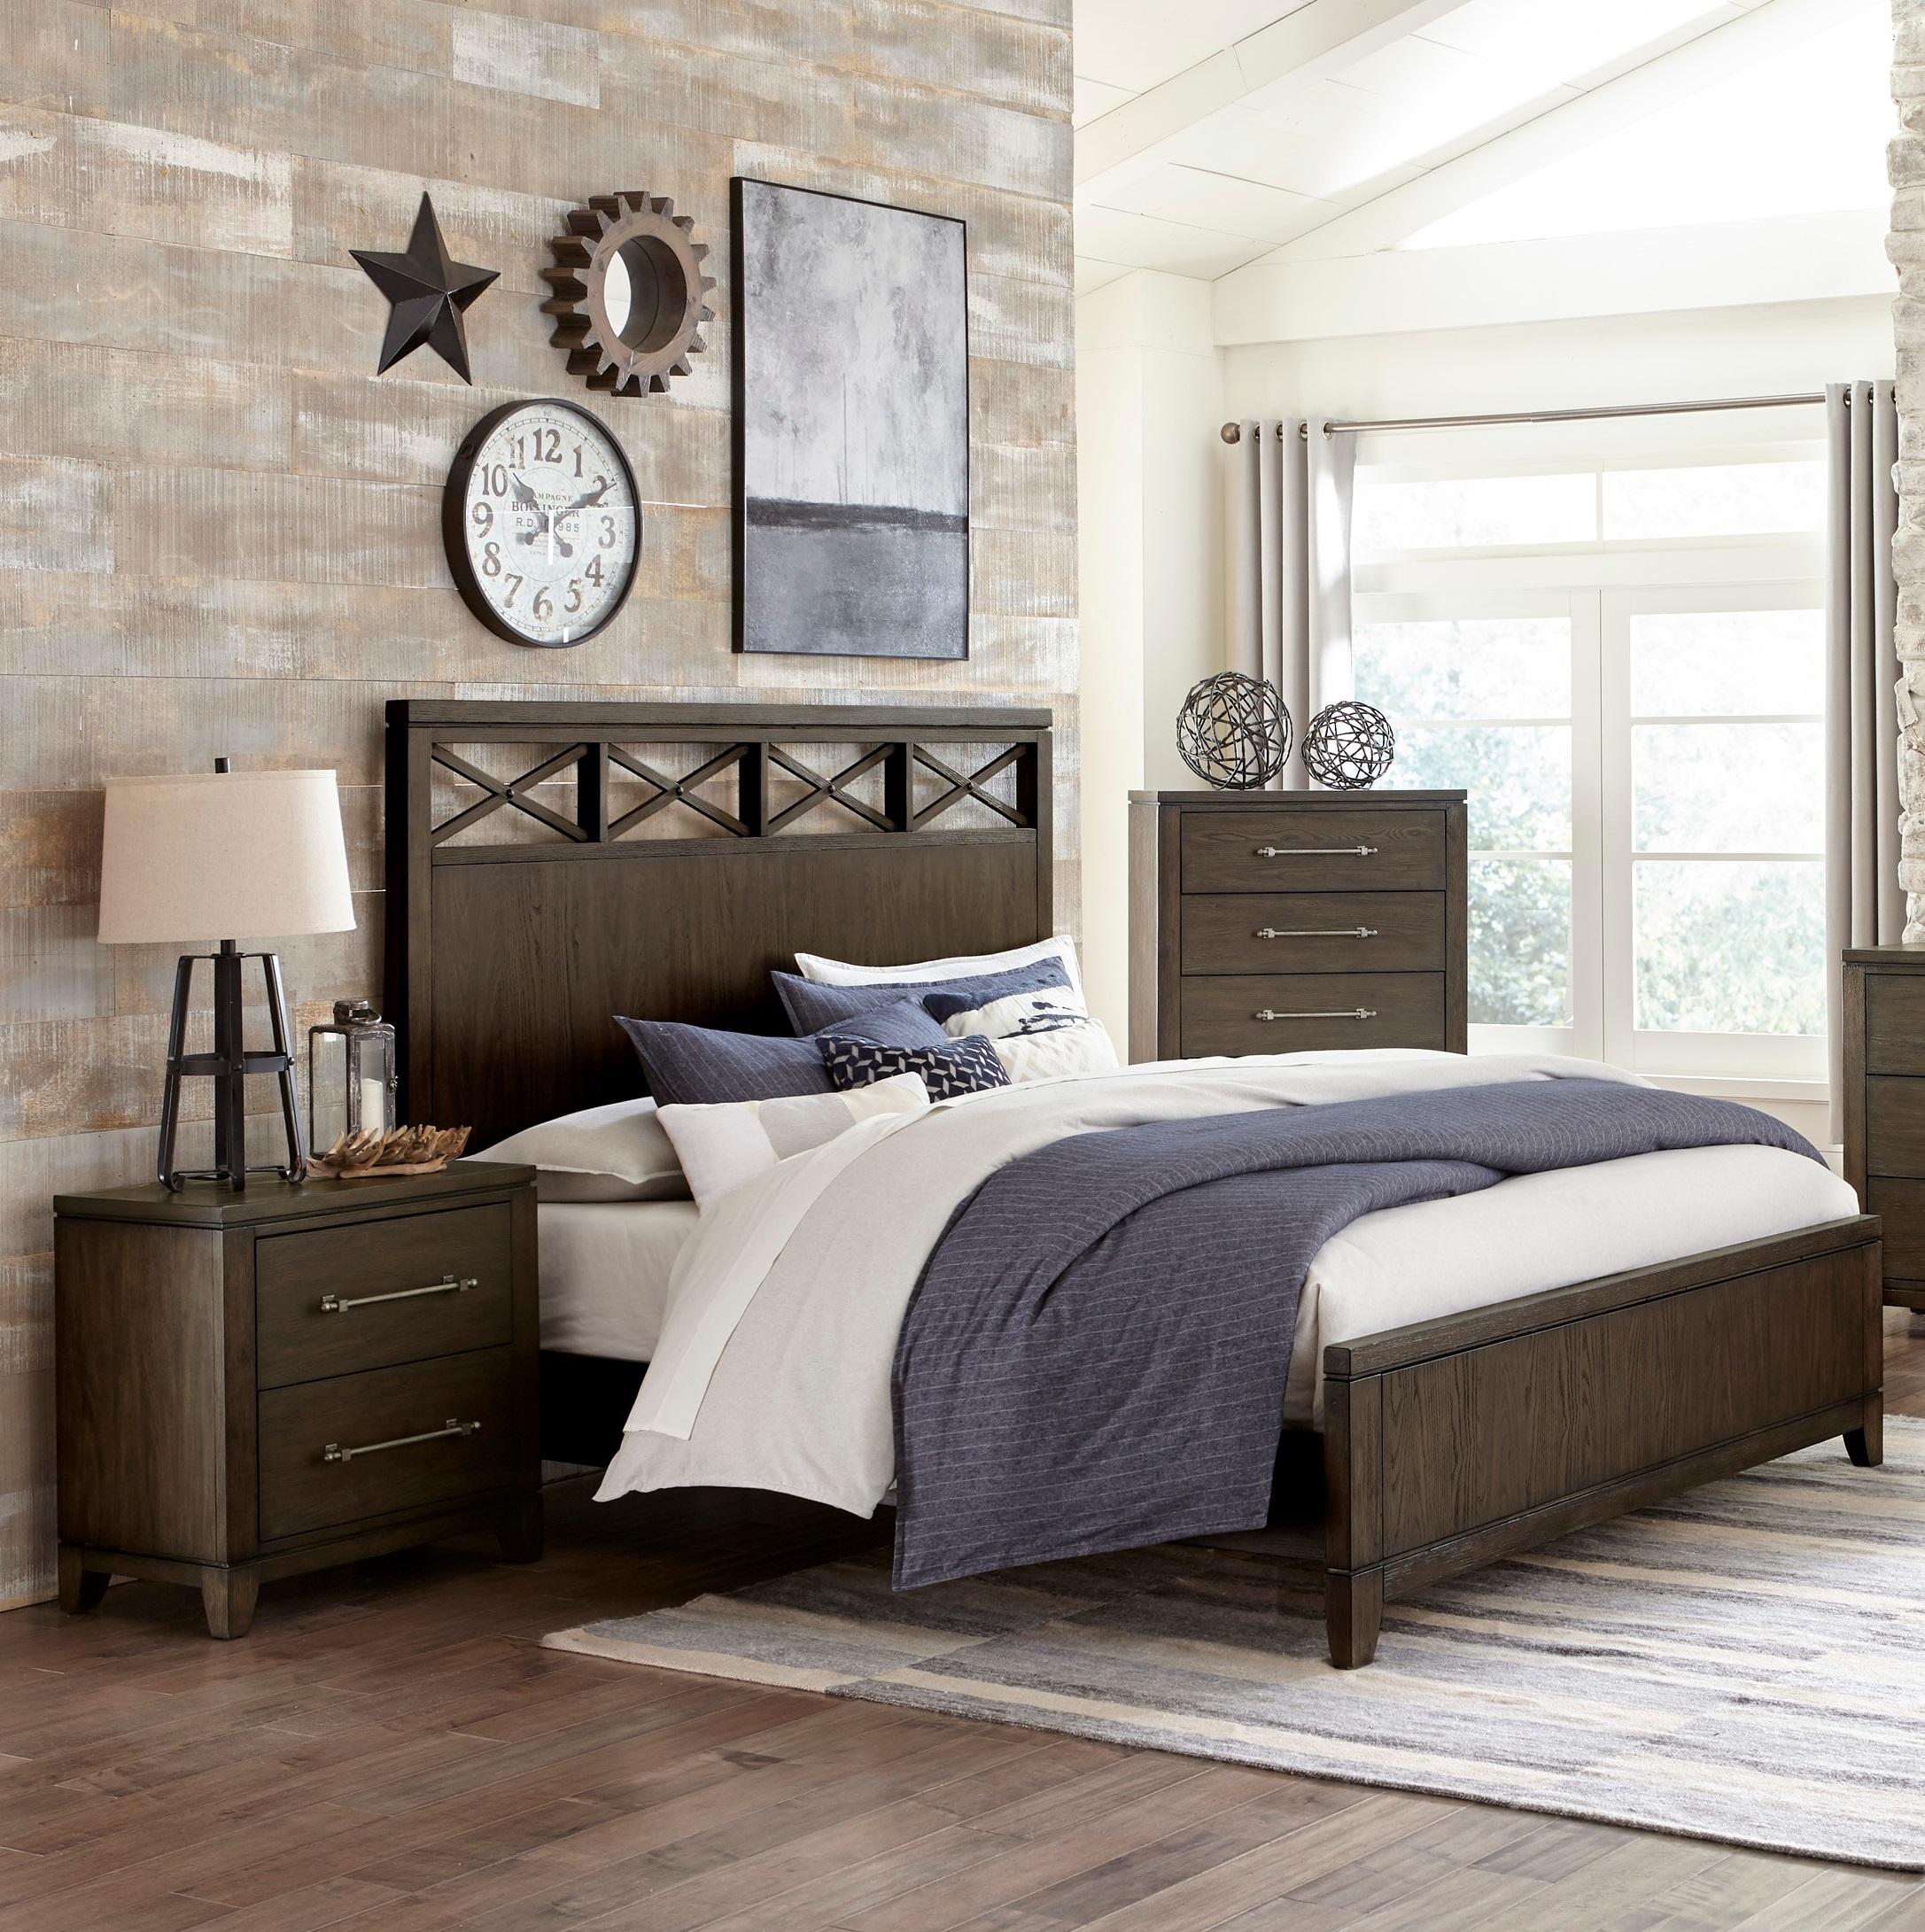 

    
Contemporary Dark Brown Wood Queen Bedroom Set 3pcs Homelegance 1669-1* Griggs
